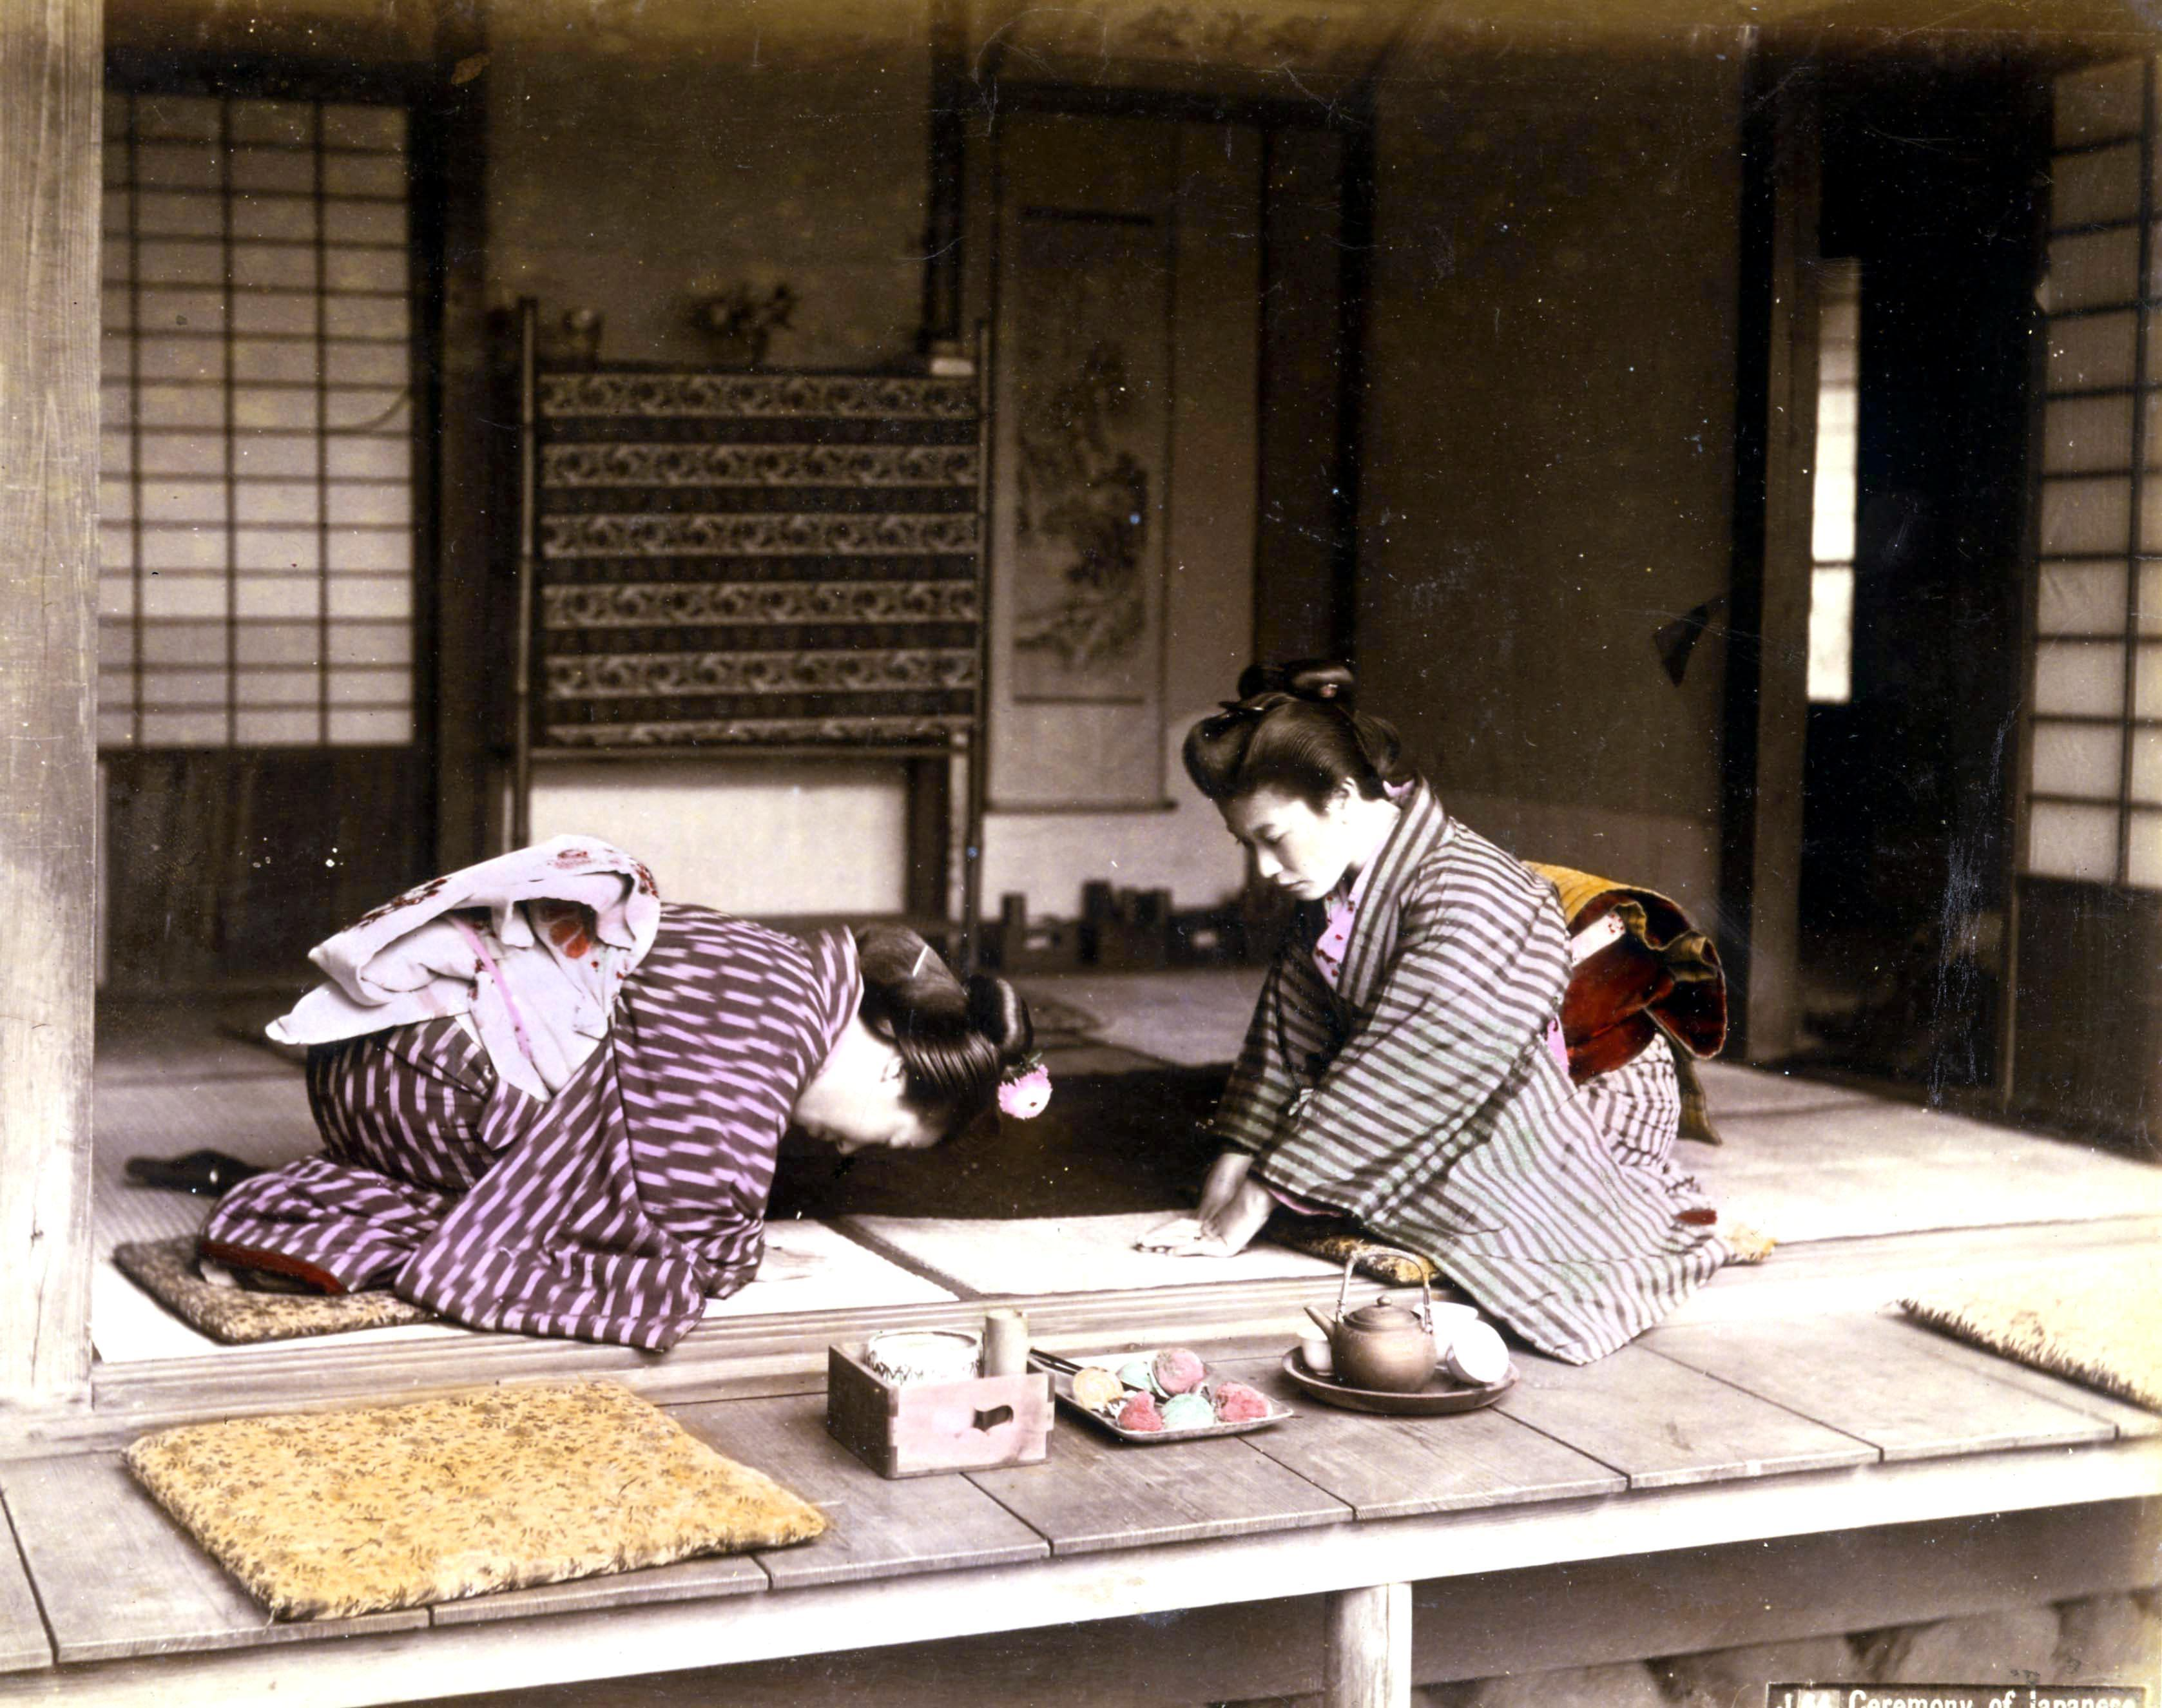 Juego de batidores Matcha: elementos esenciales para la ceremonia del té  tradicional japonesa